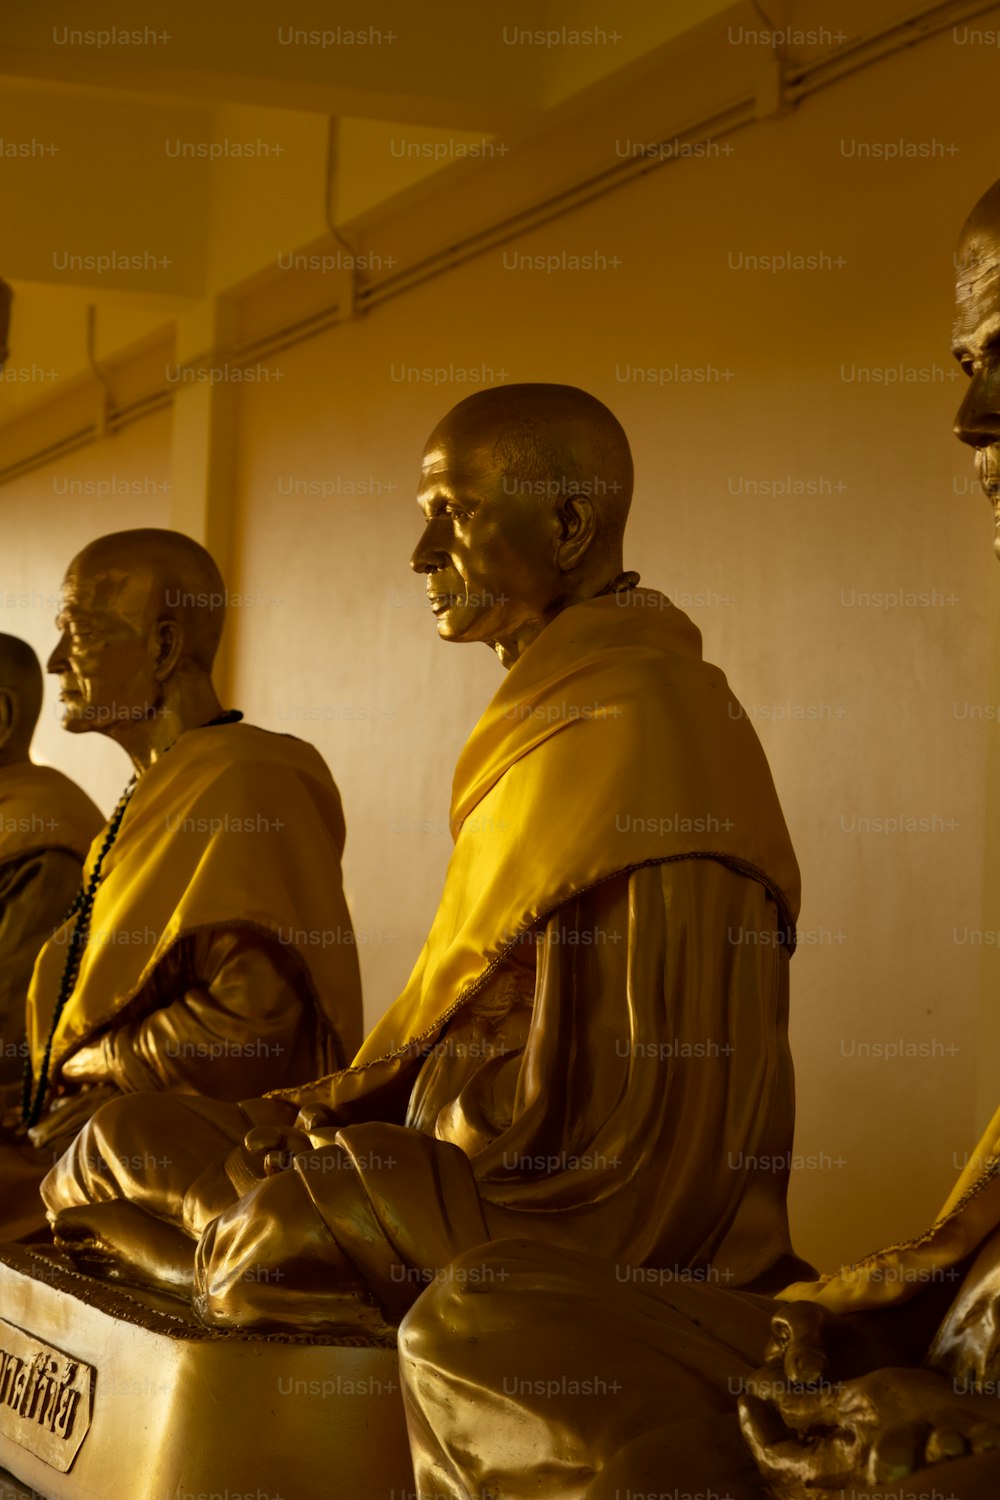 Un gruppo di statue di Buddha sedute l'una accanto all'altra